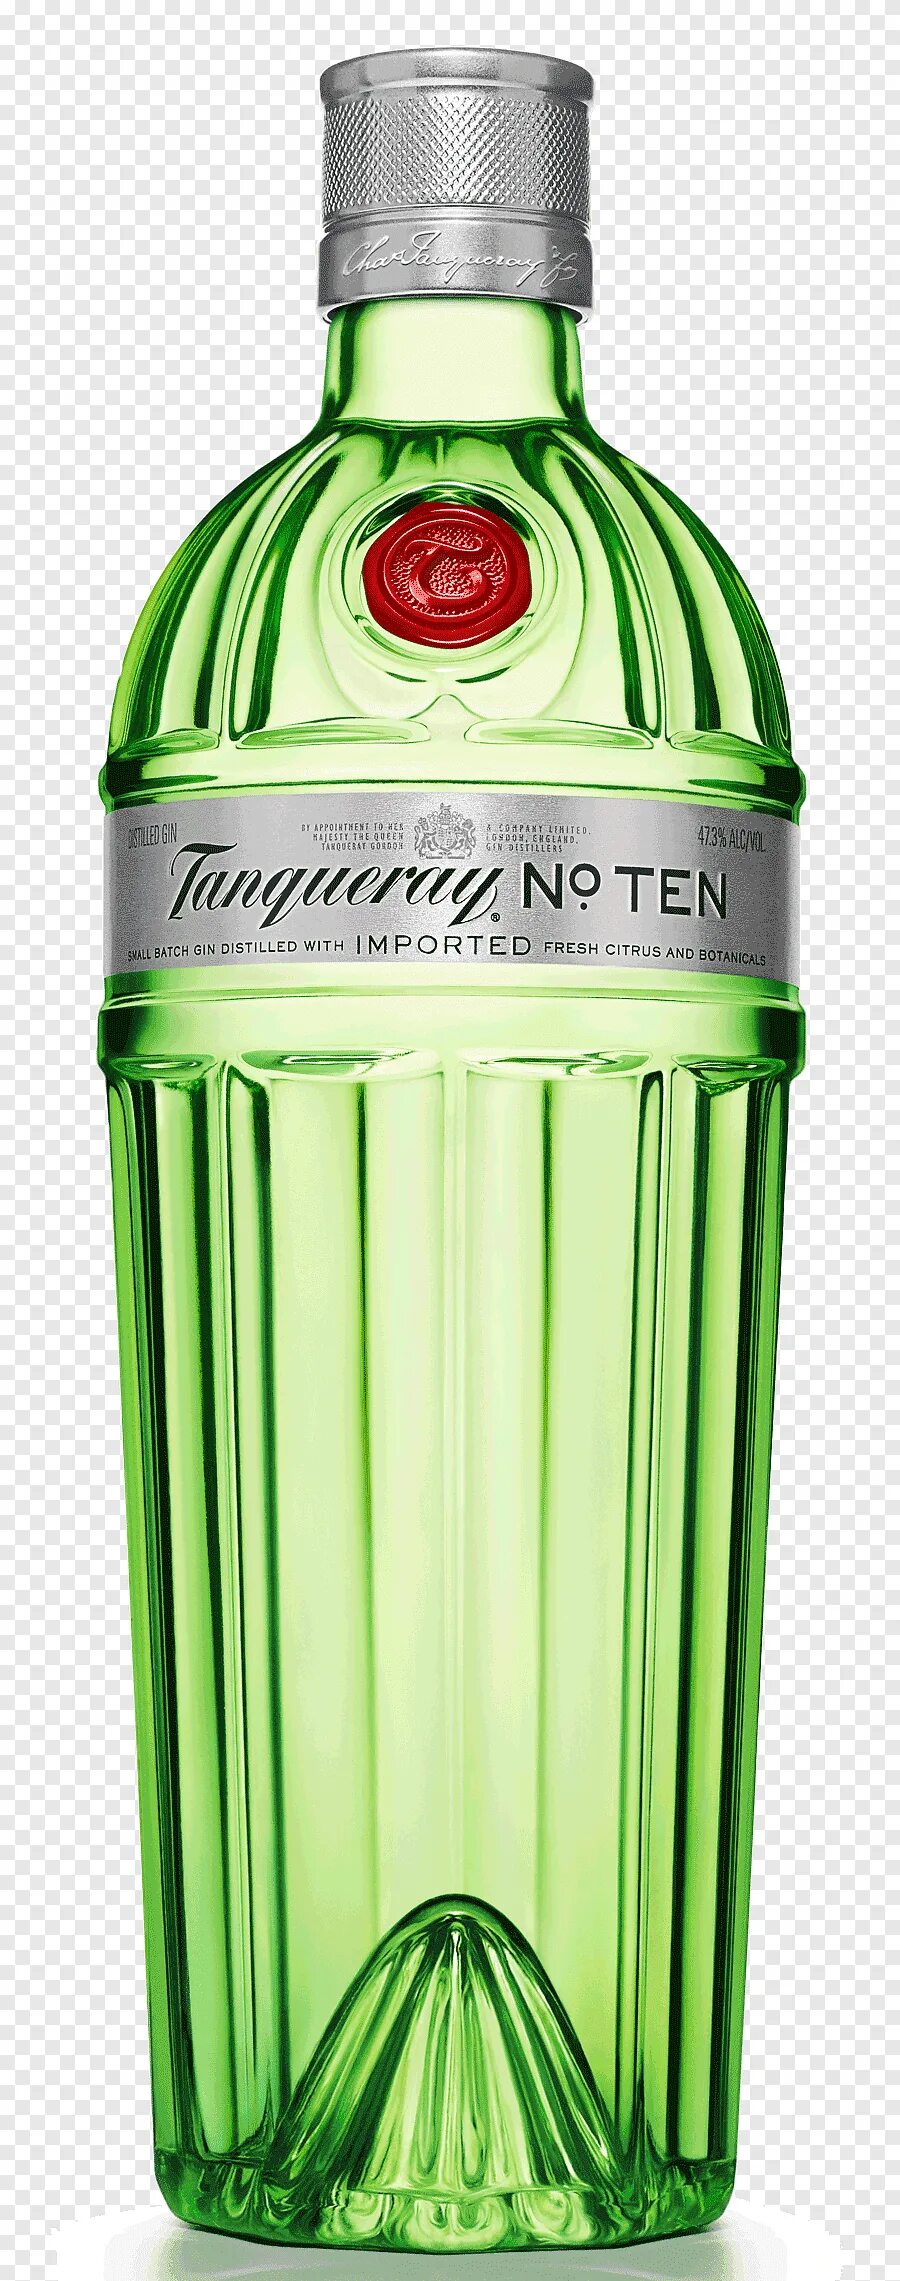 Джин Tanqueray London Dry Gin 0.7 л. Танкерей 10. Джин Танкерей 0,7л 47,3%.